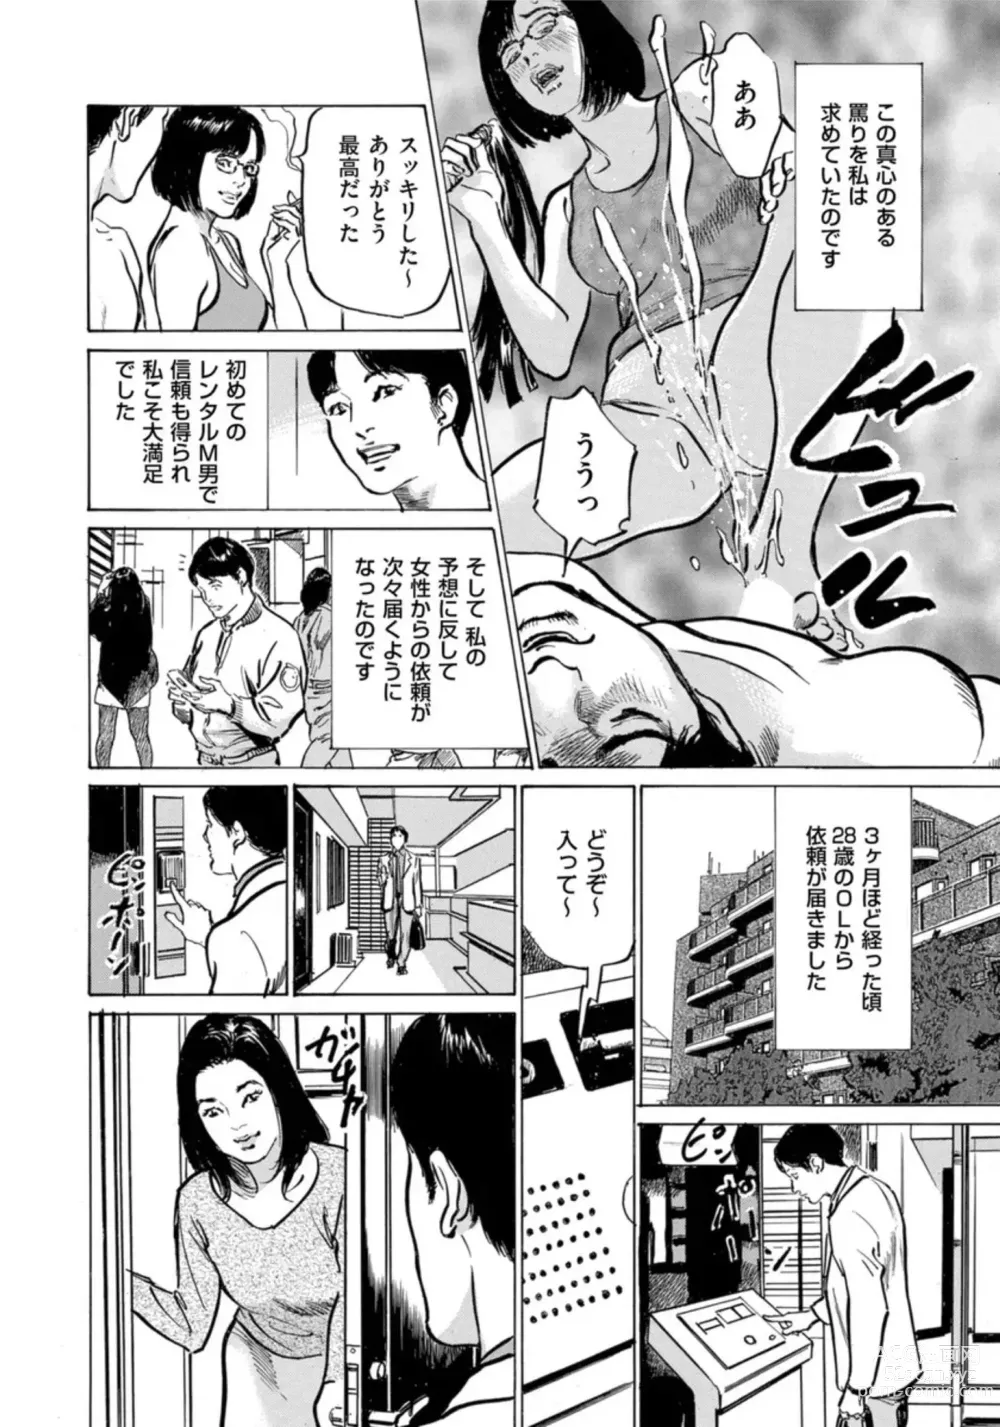 Page 217 of manga Hontou ni Atta Omowazu Zawatsuku Totteoki no Hanashi 14 episodes